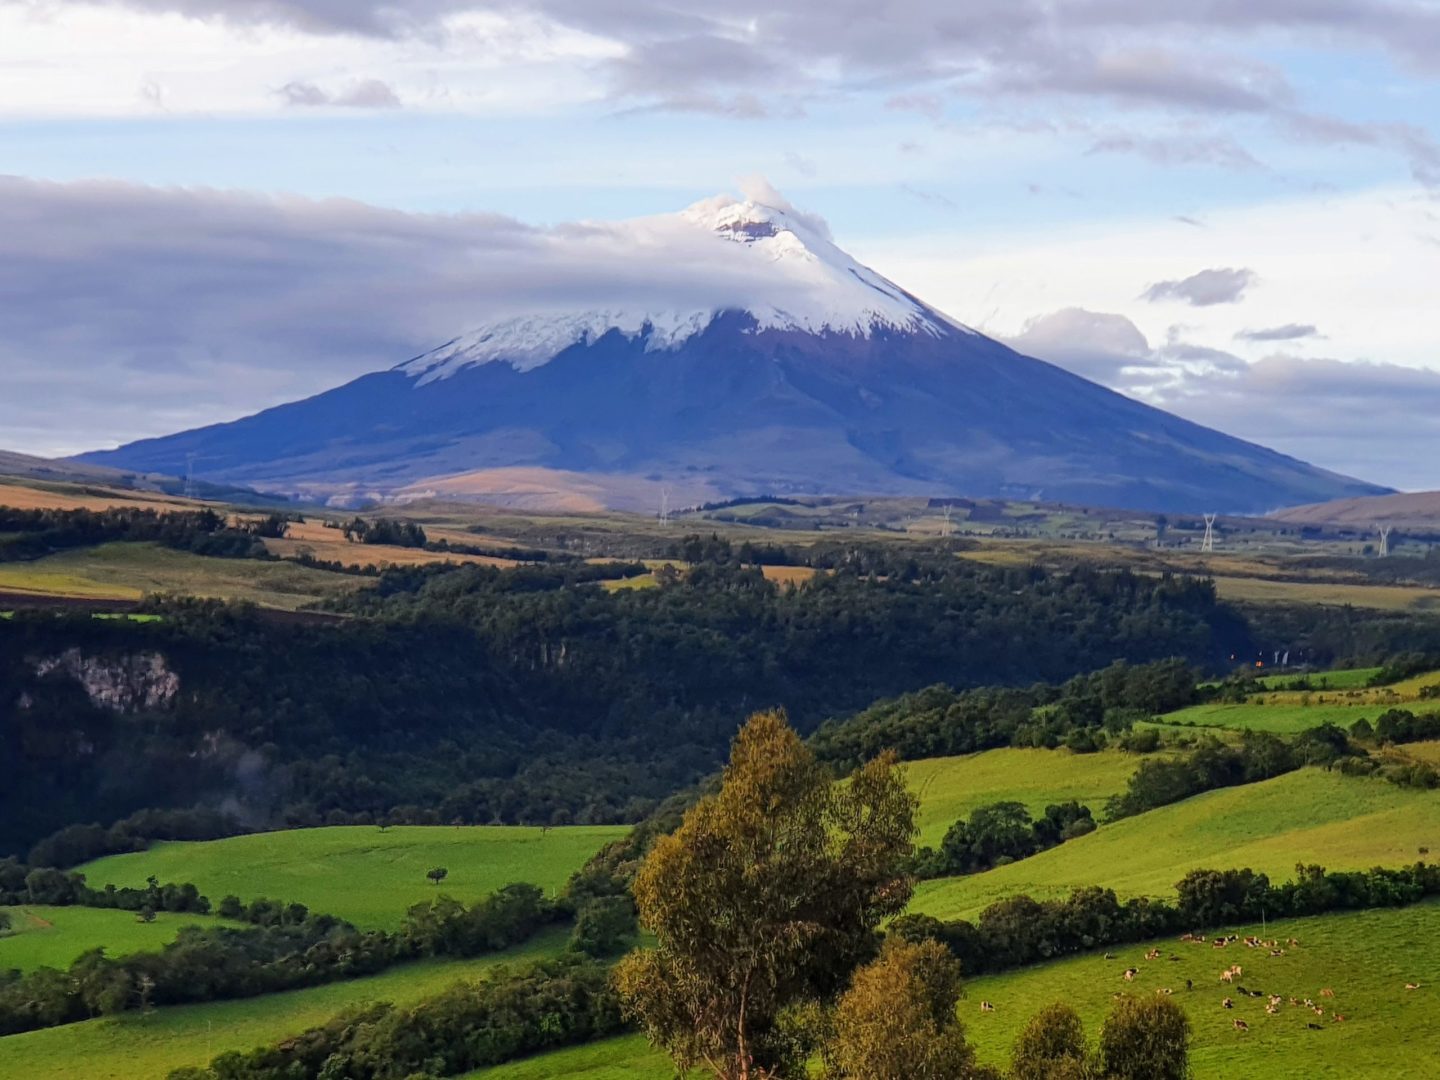 Vulkan Cotopaxi in Ecuador